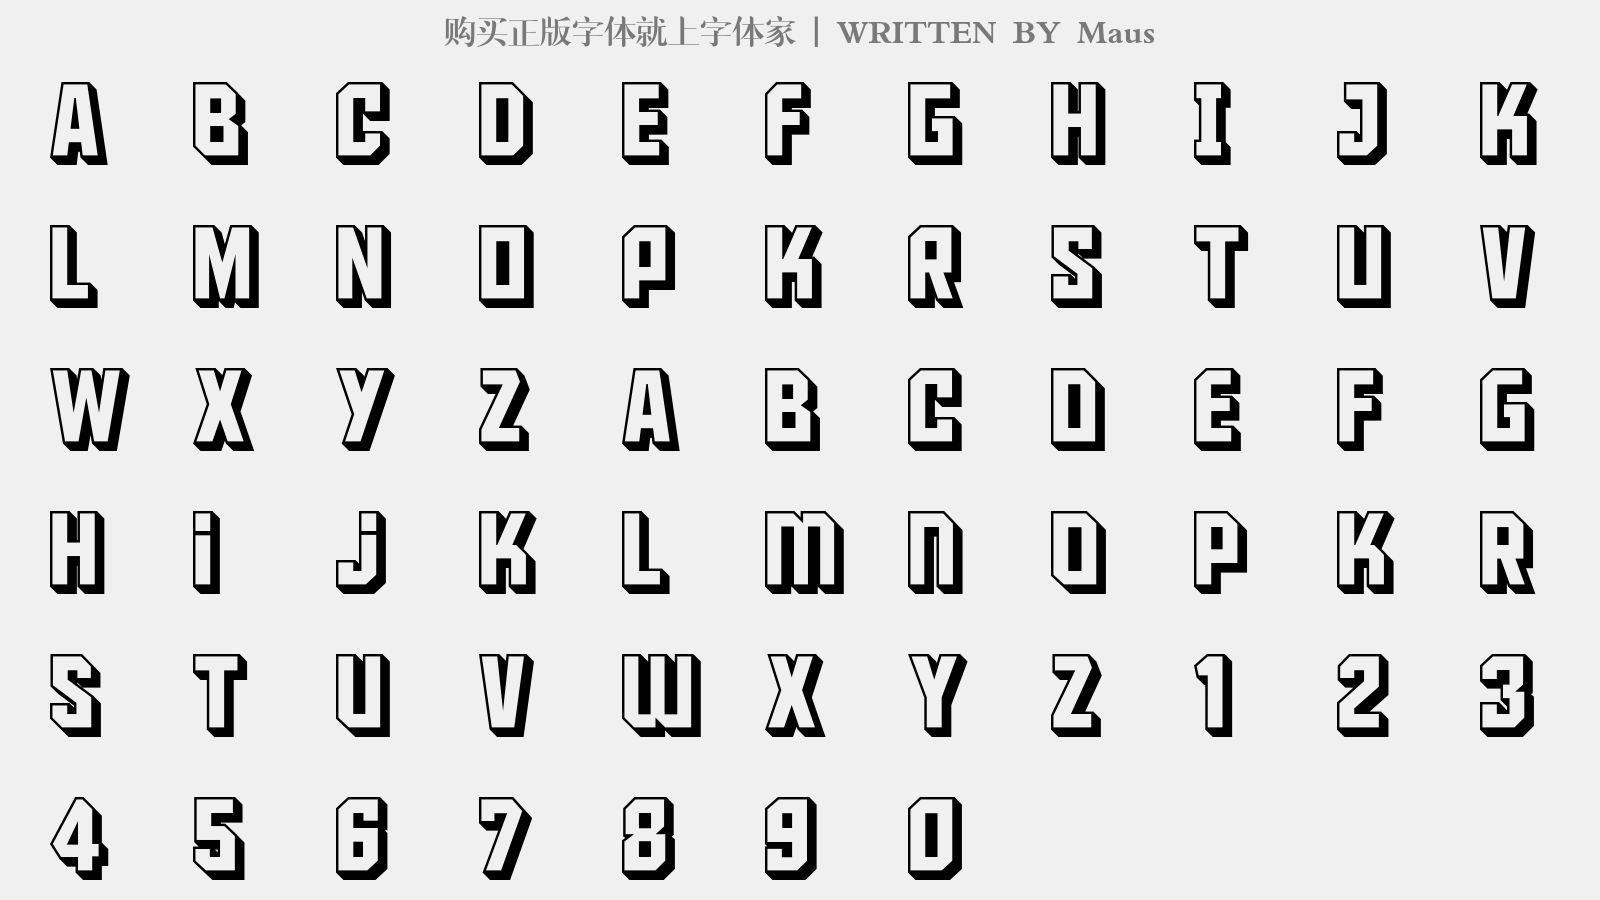 Maus - 大写字母/小写字母/数字